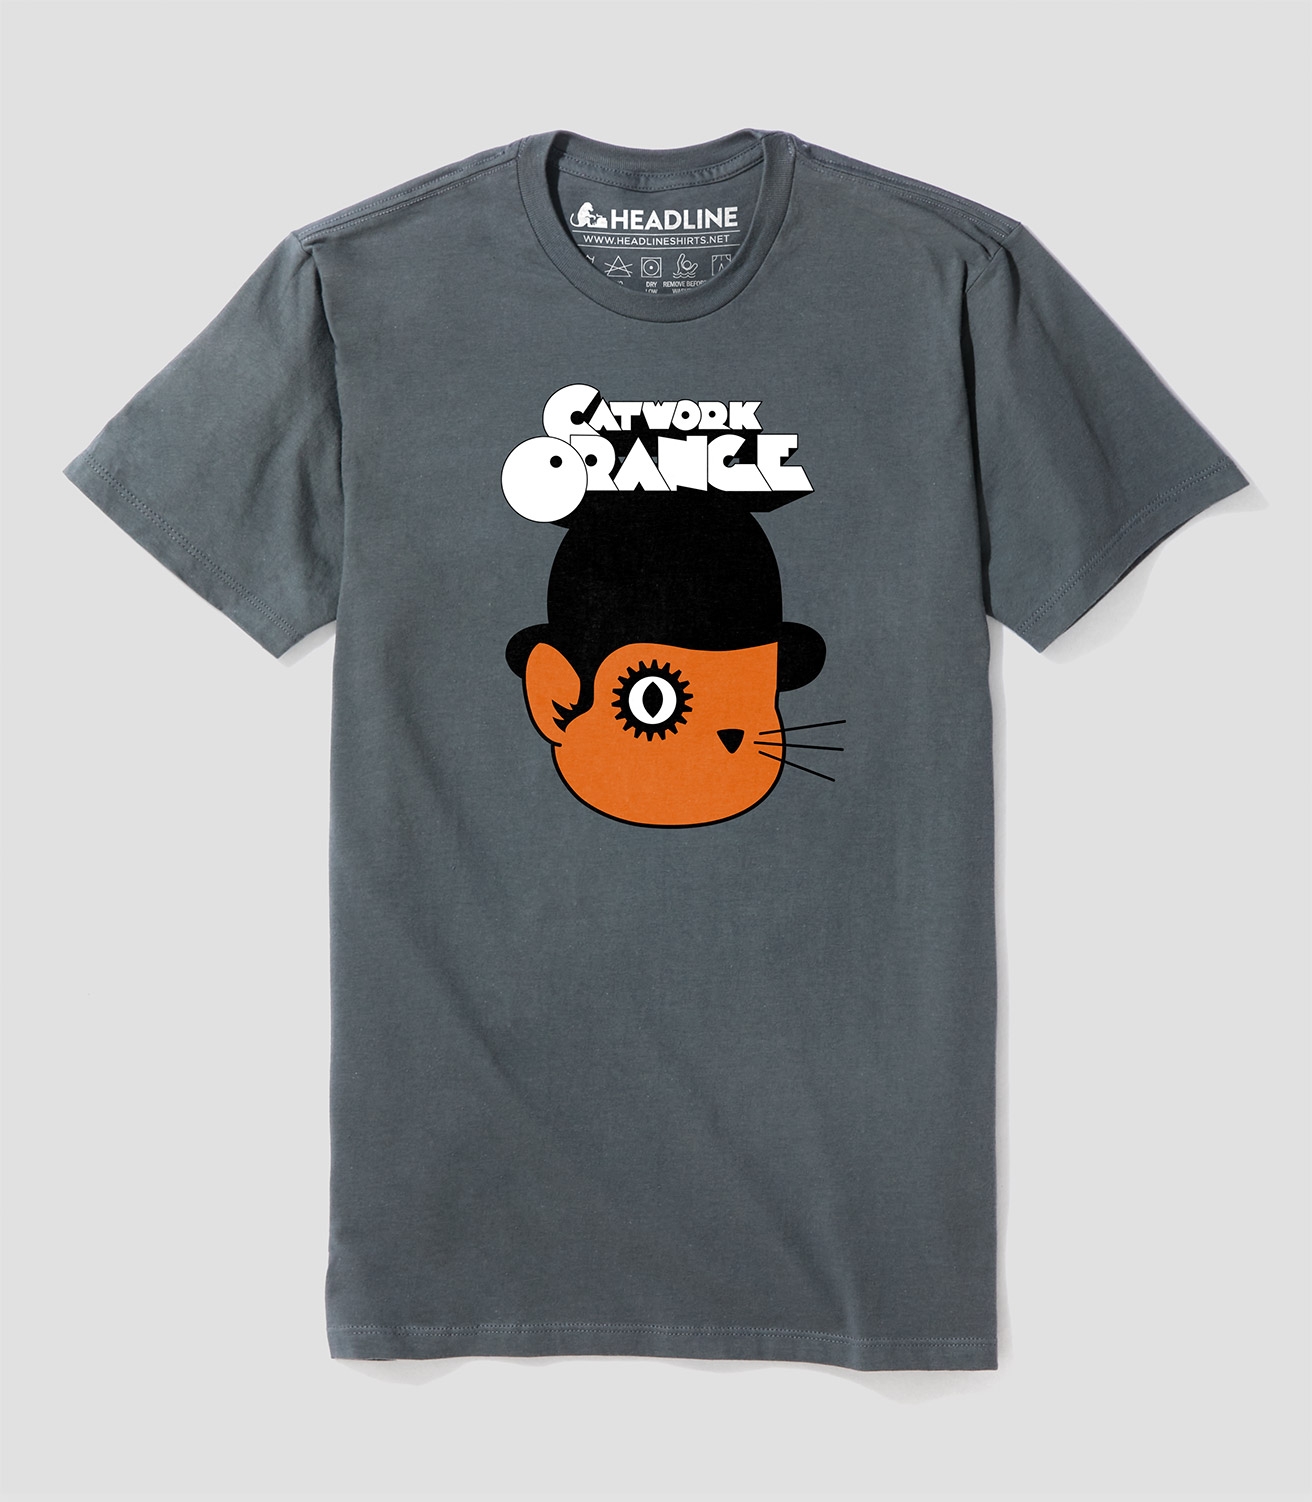 Catwork Orange Unisex 100% Cotton T-Shirt